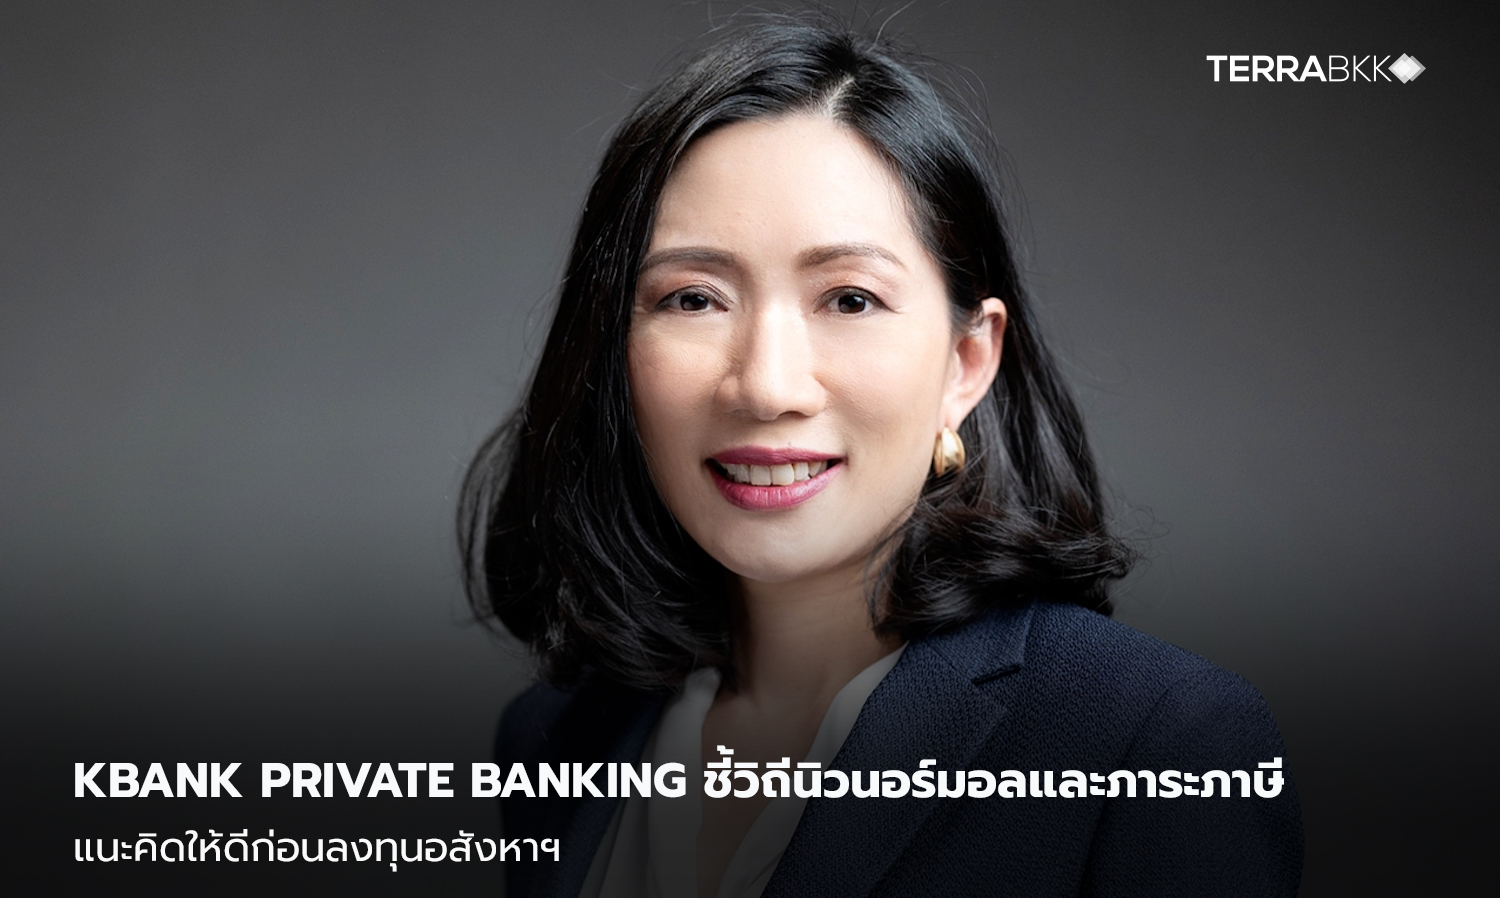 KBank Private Banking ชี้วิถีนิวนอร์มอลและภาระภาษี แนะคิดให้ดีก่อนลงทุนอสังหาฯ 